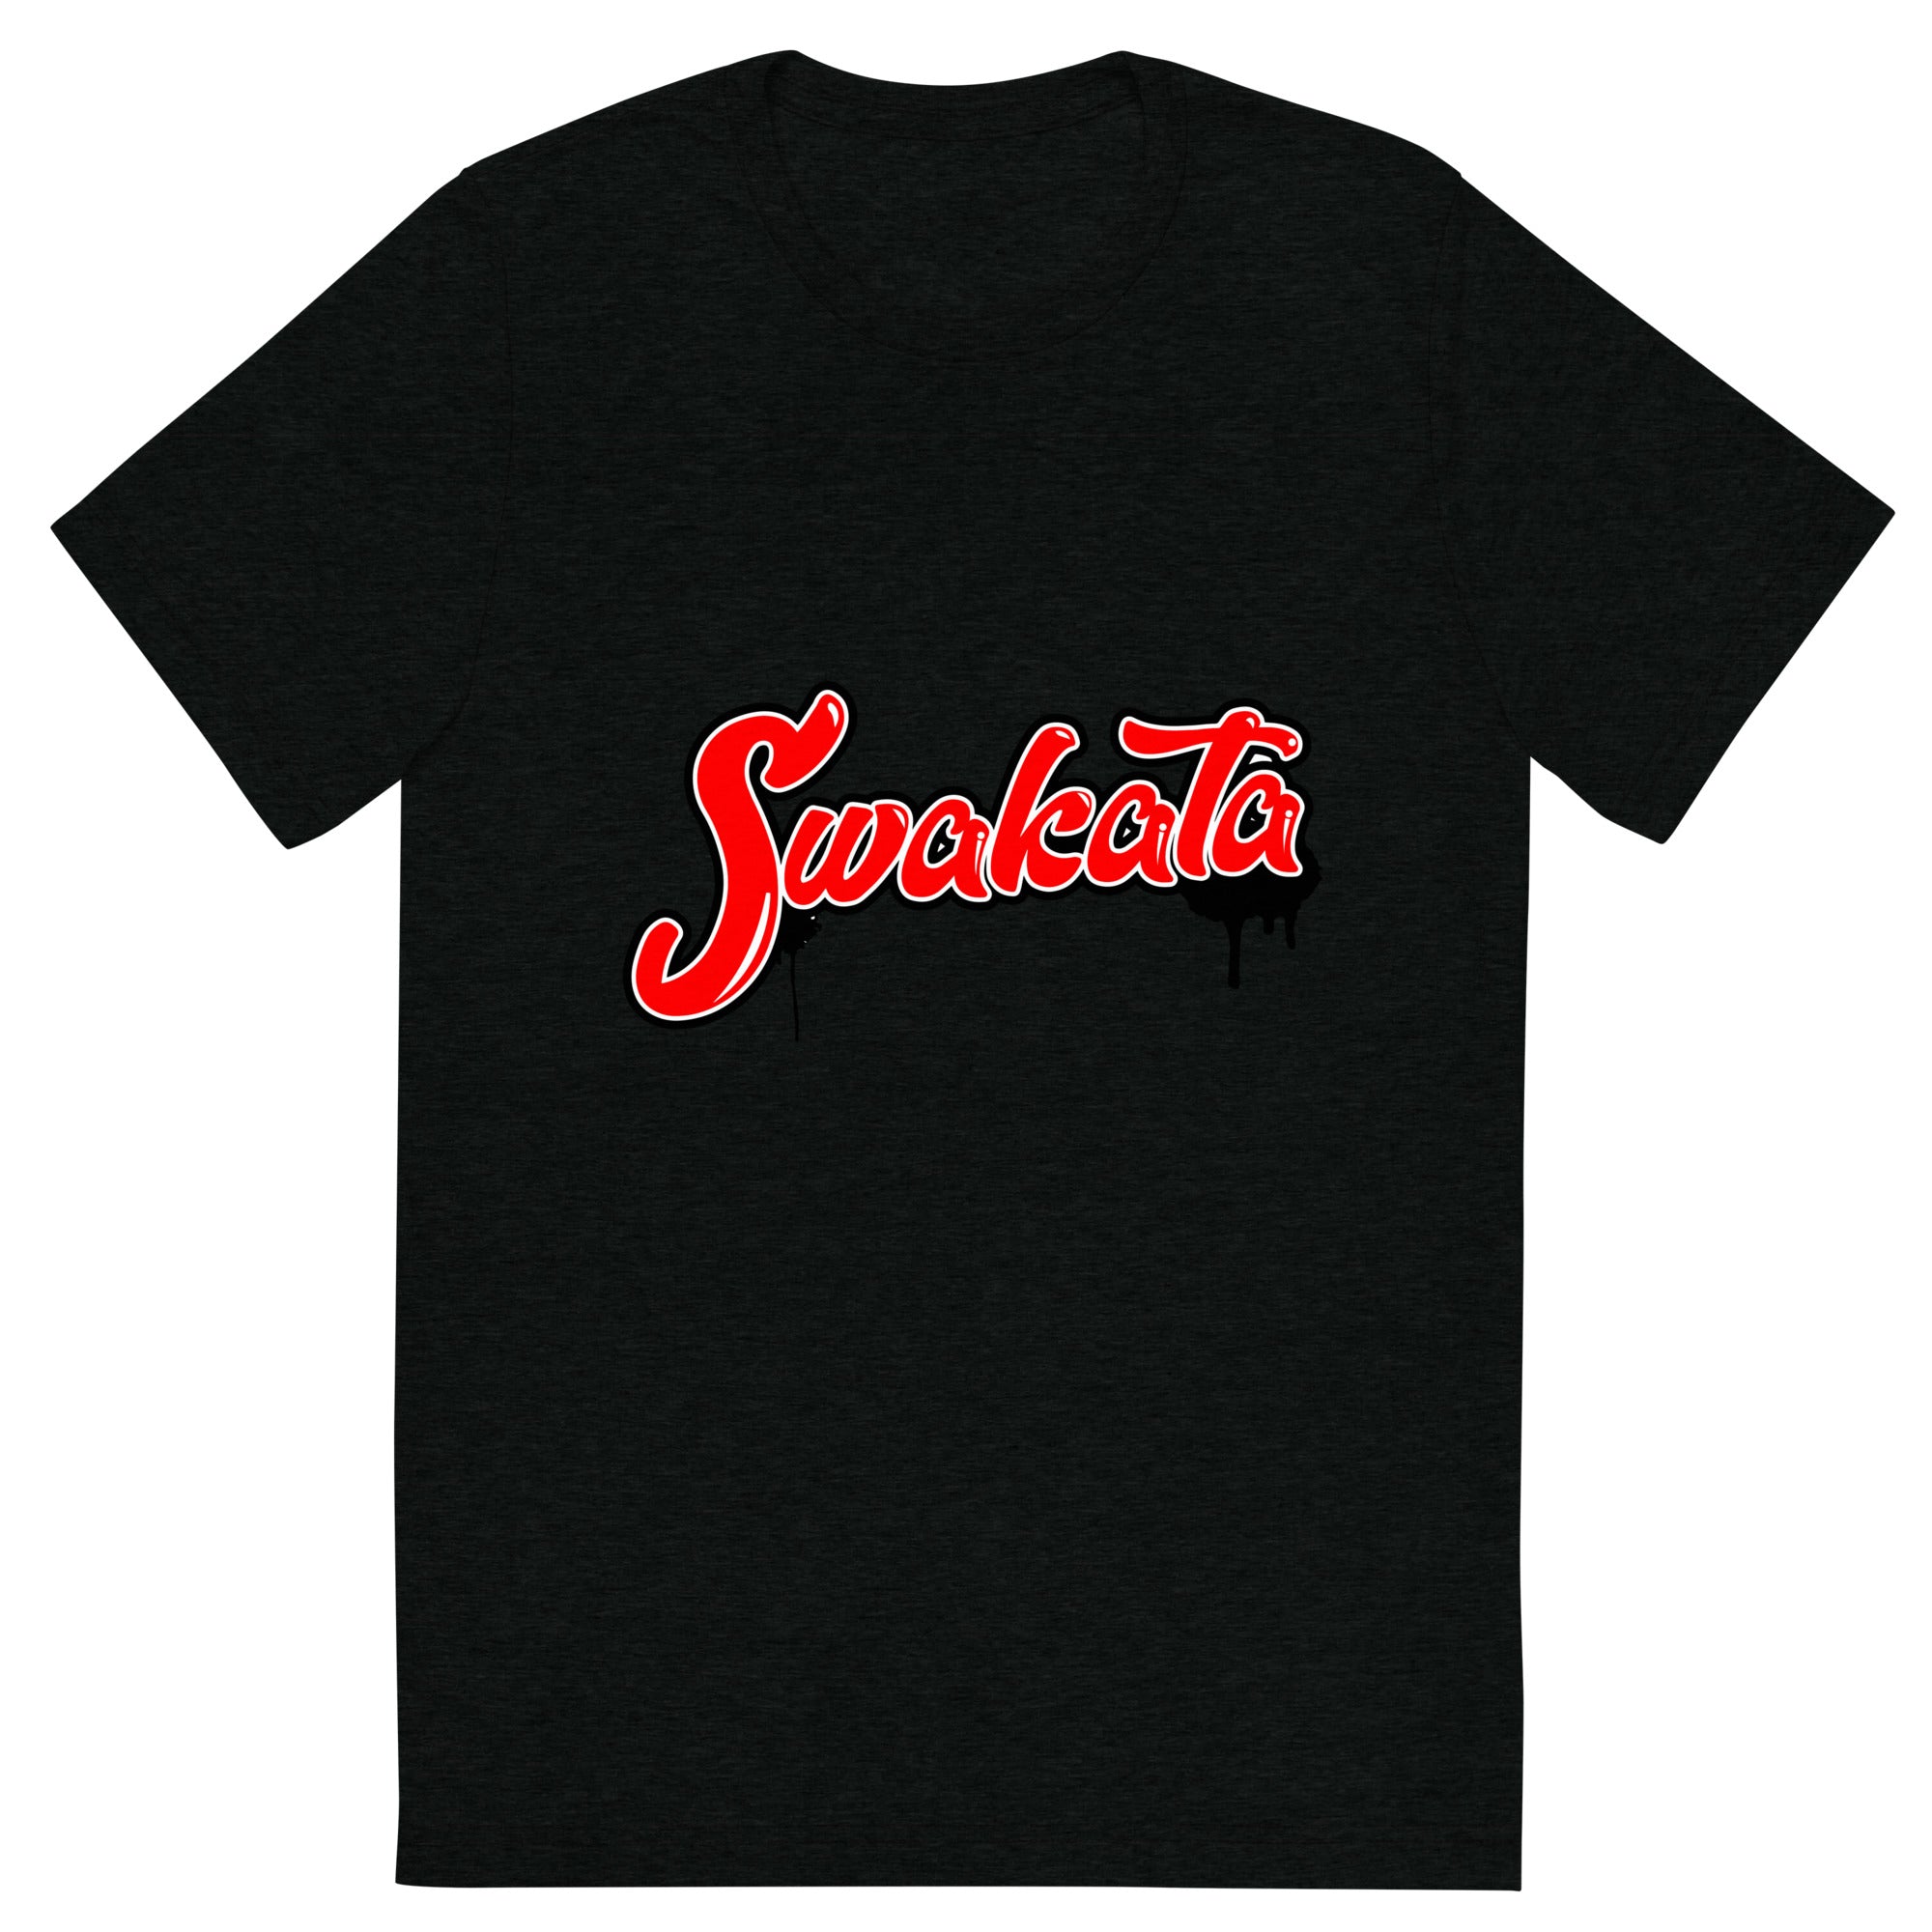 Swakata T-Shirt